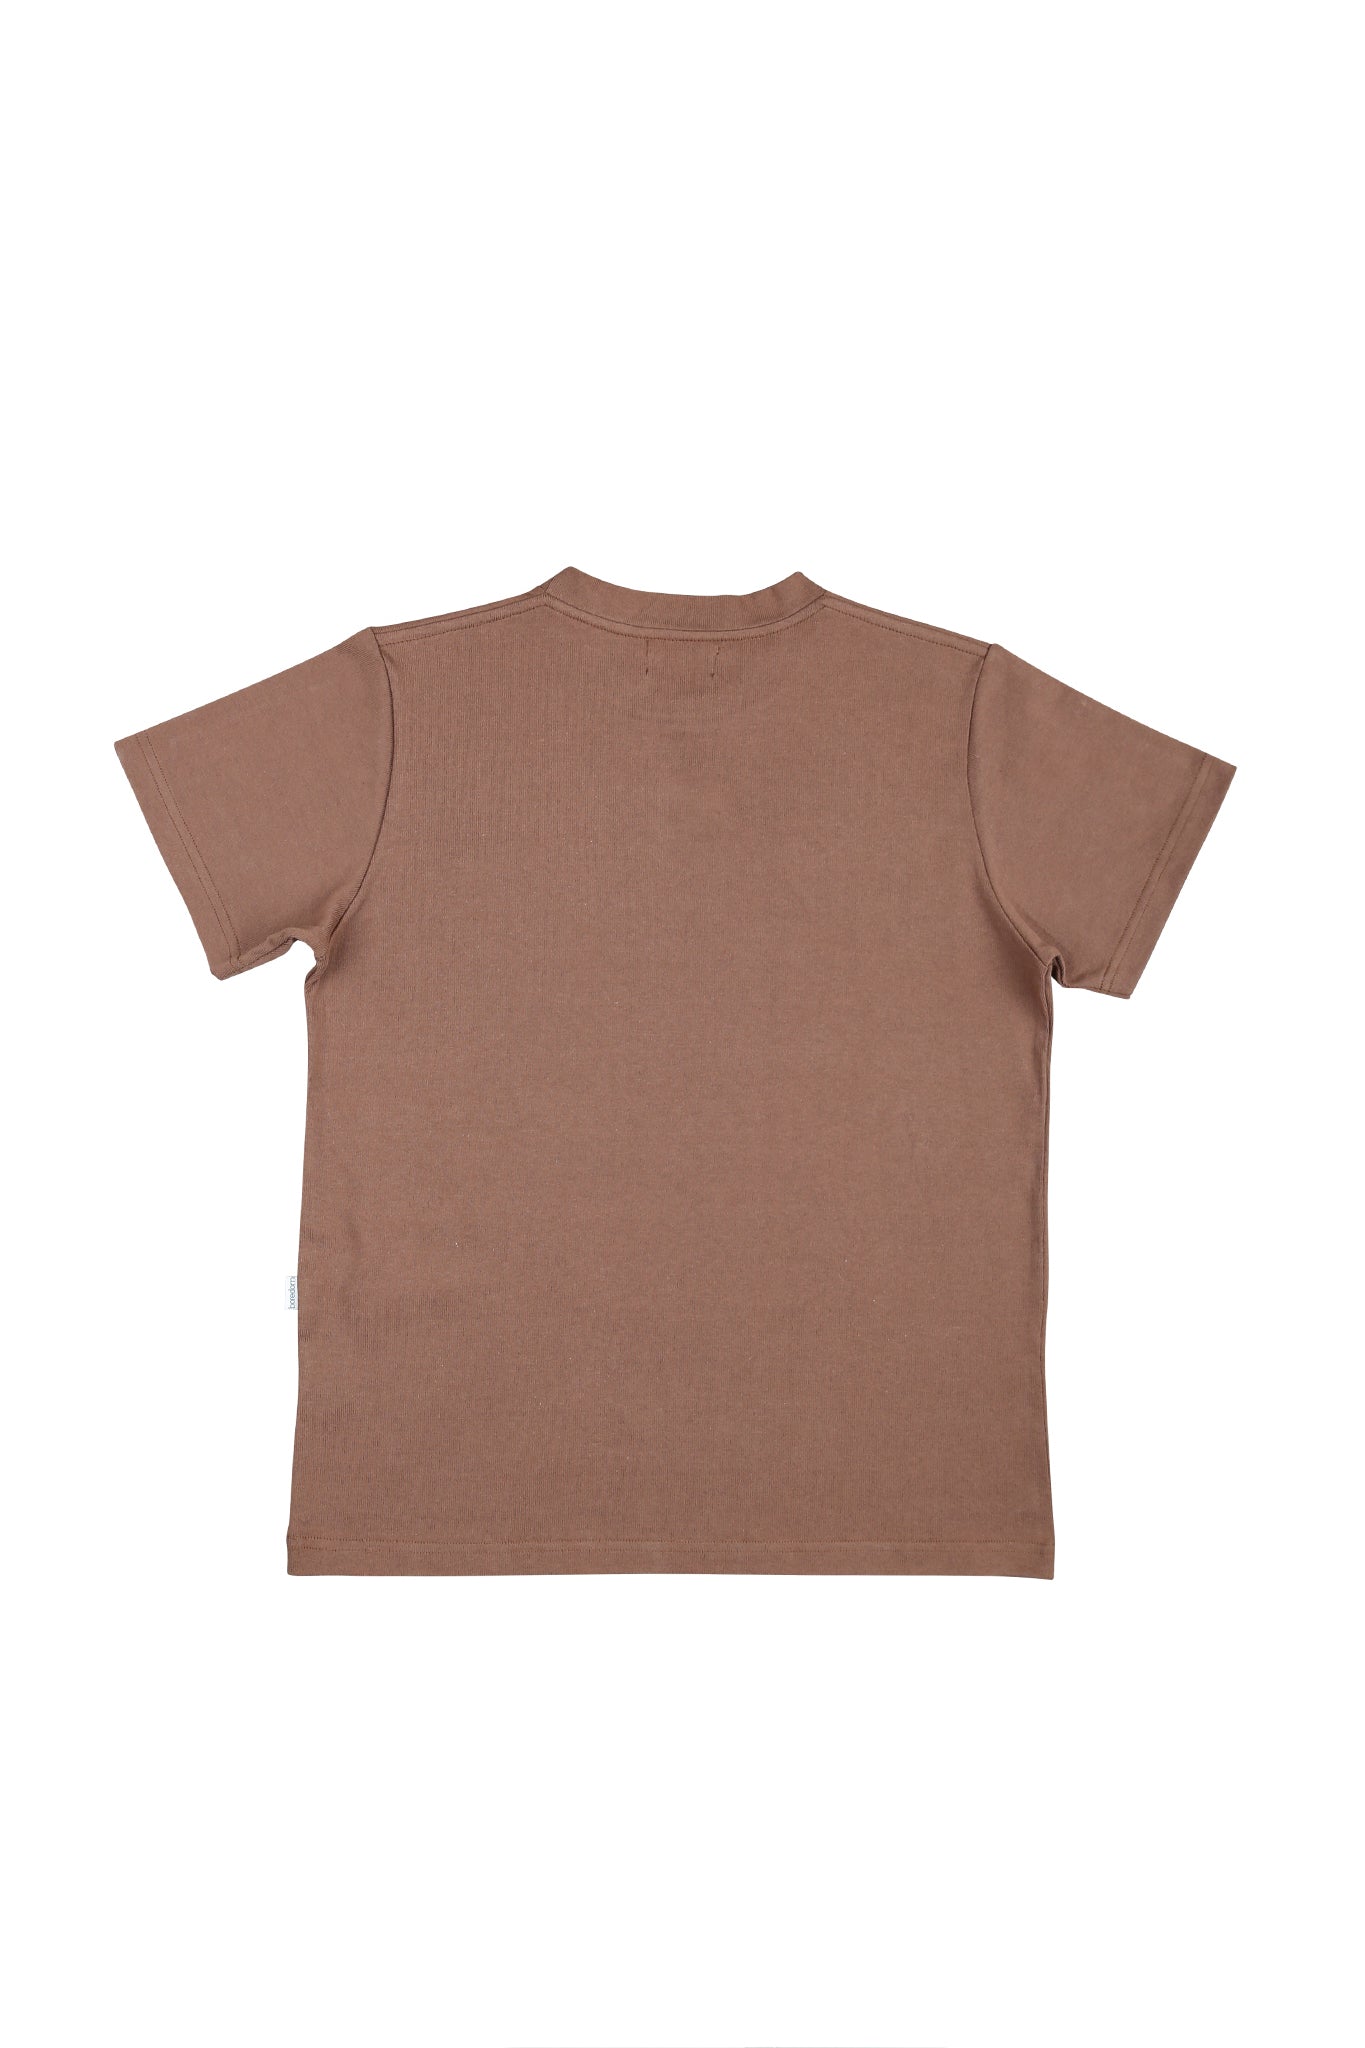 Heavyweight T-Shirt - Brown